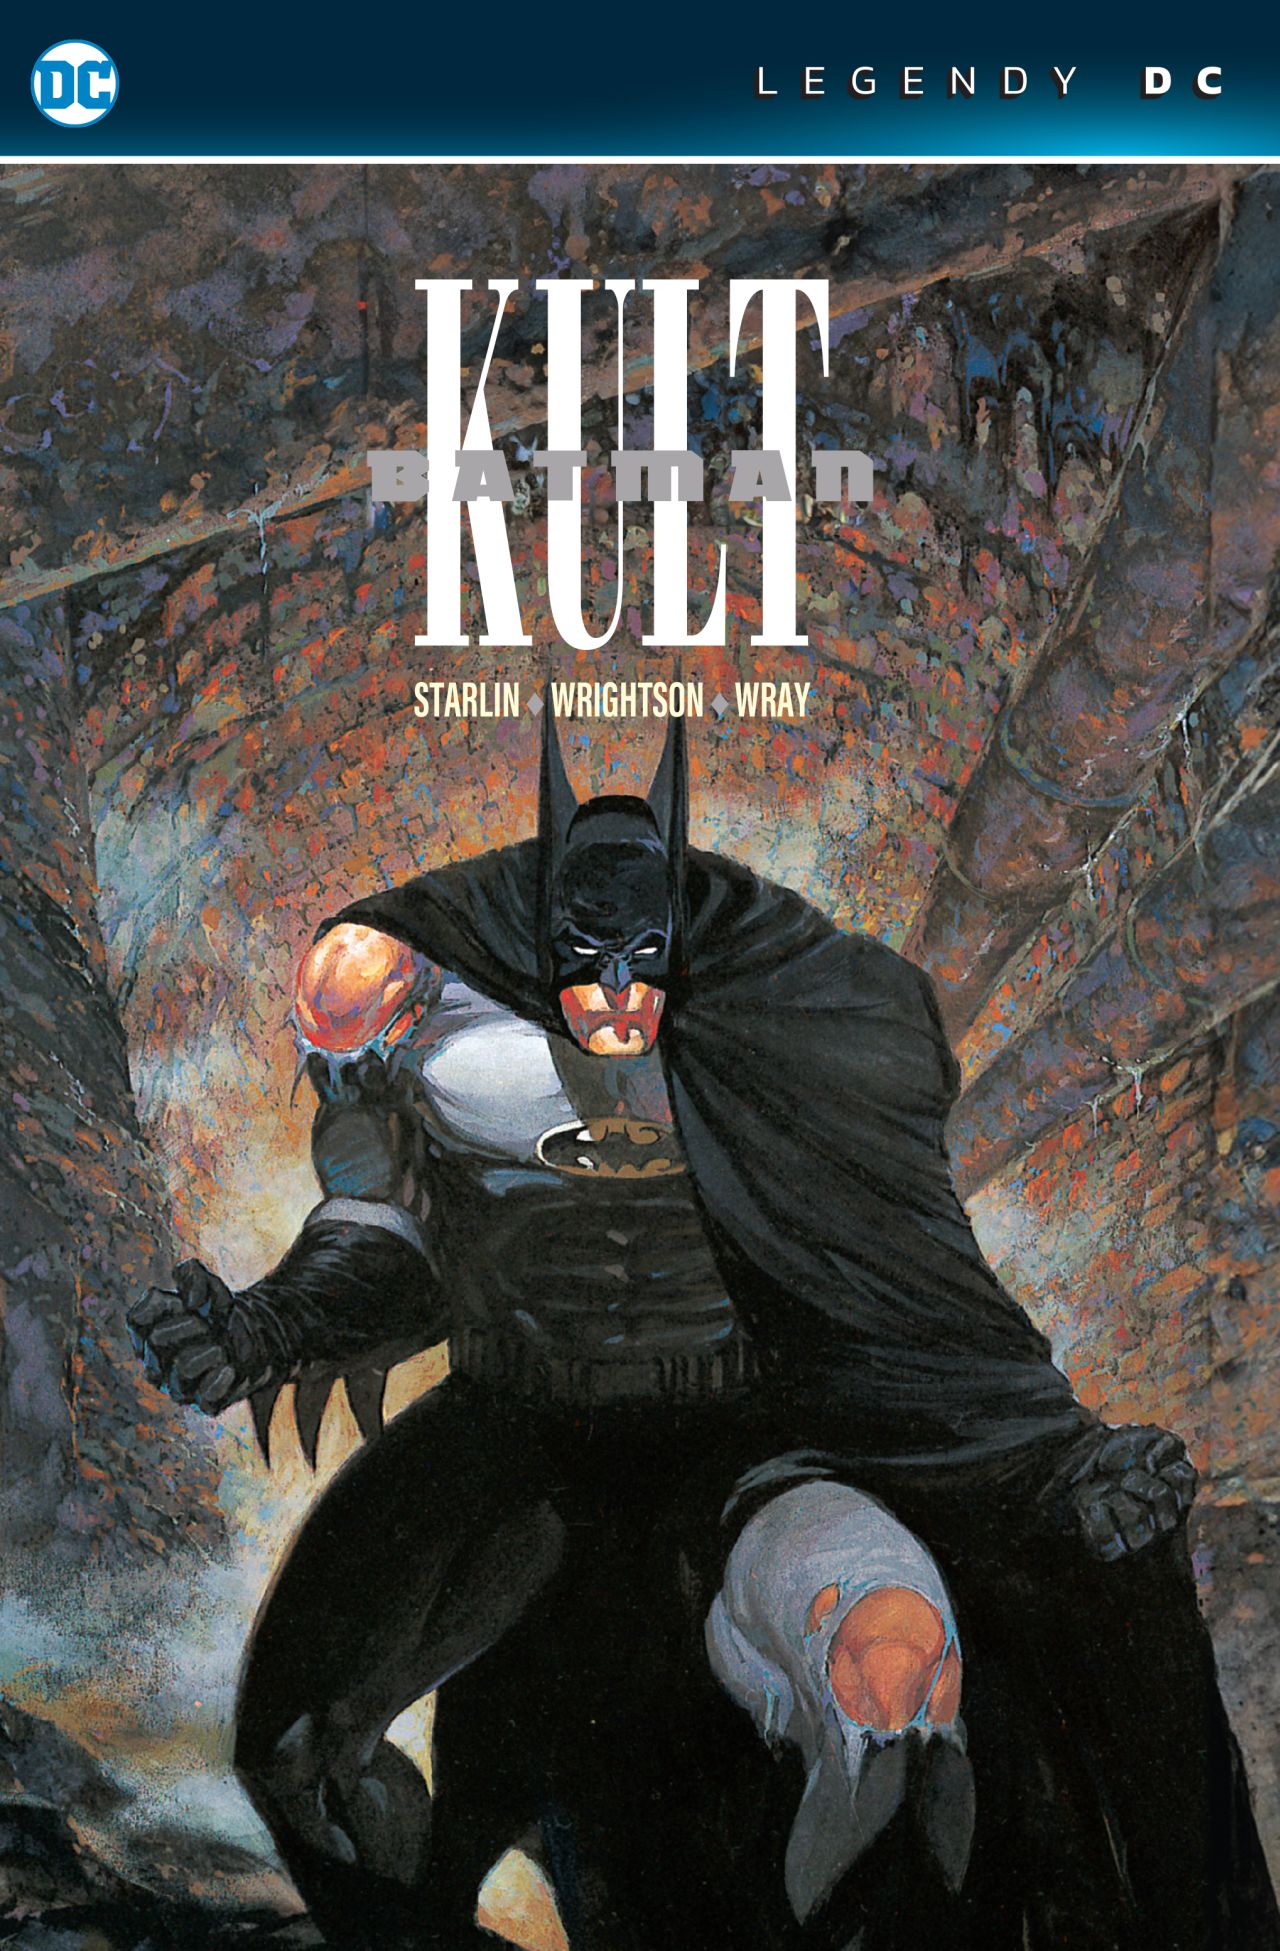 obrázek k novince - Batman: Kult (Legendy DC)